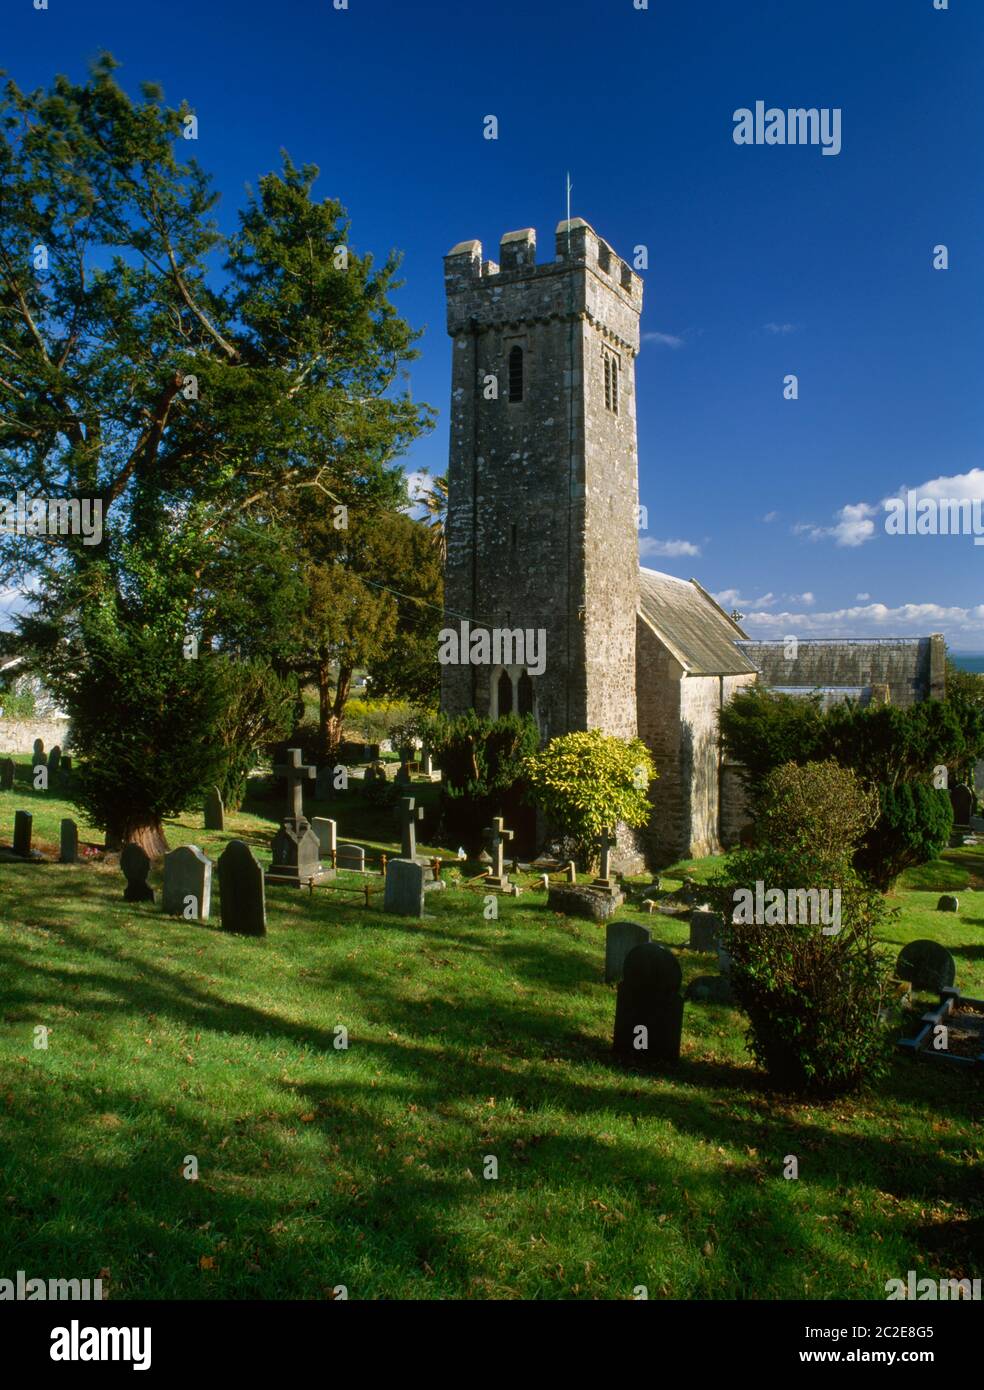 Sehen Sie ENE der späten normannischen Kirche von St. Nicholas, Penally, Pembrokeshire, Wales, Großbritannien. Sie ersetzte die frühere Kirche des hl. Teilo, der hier c AD500 geboren wurde. Stockfoto